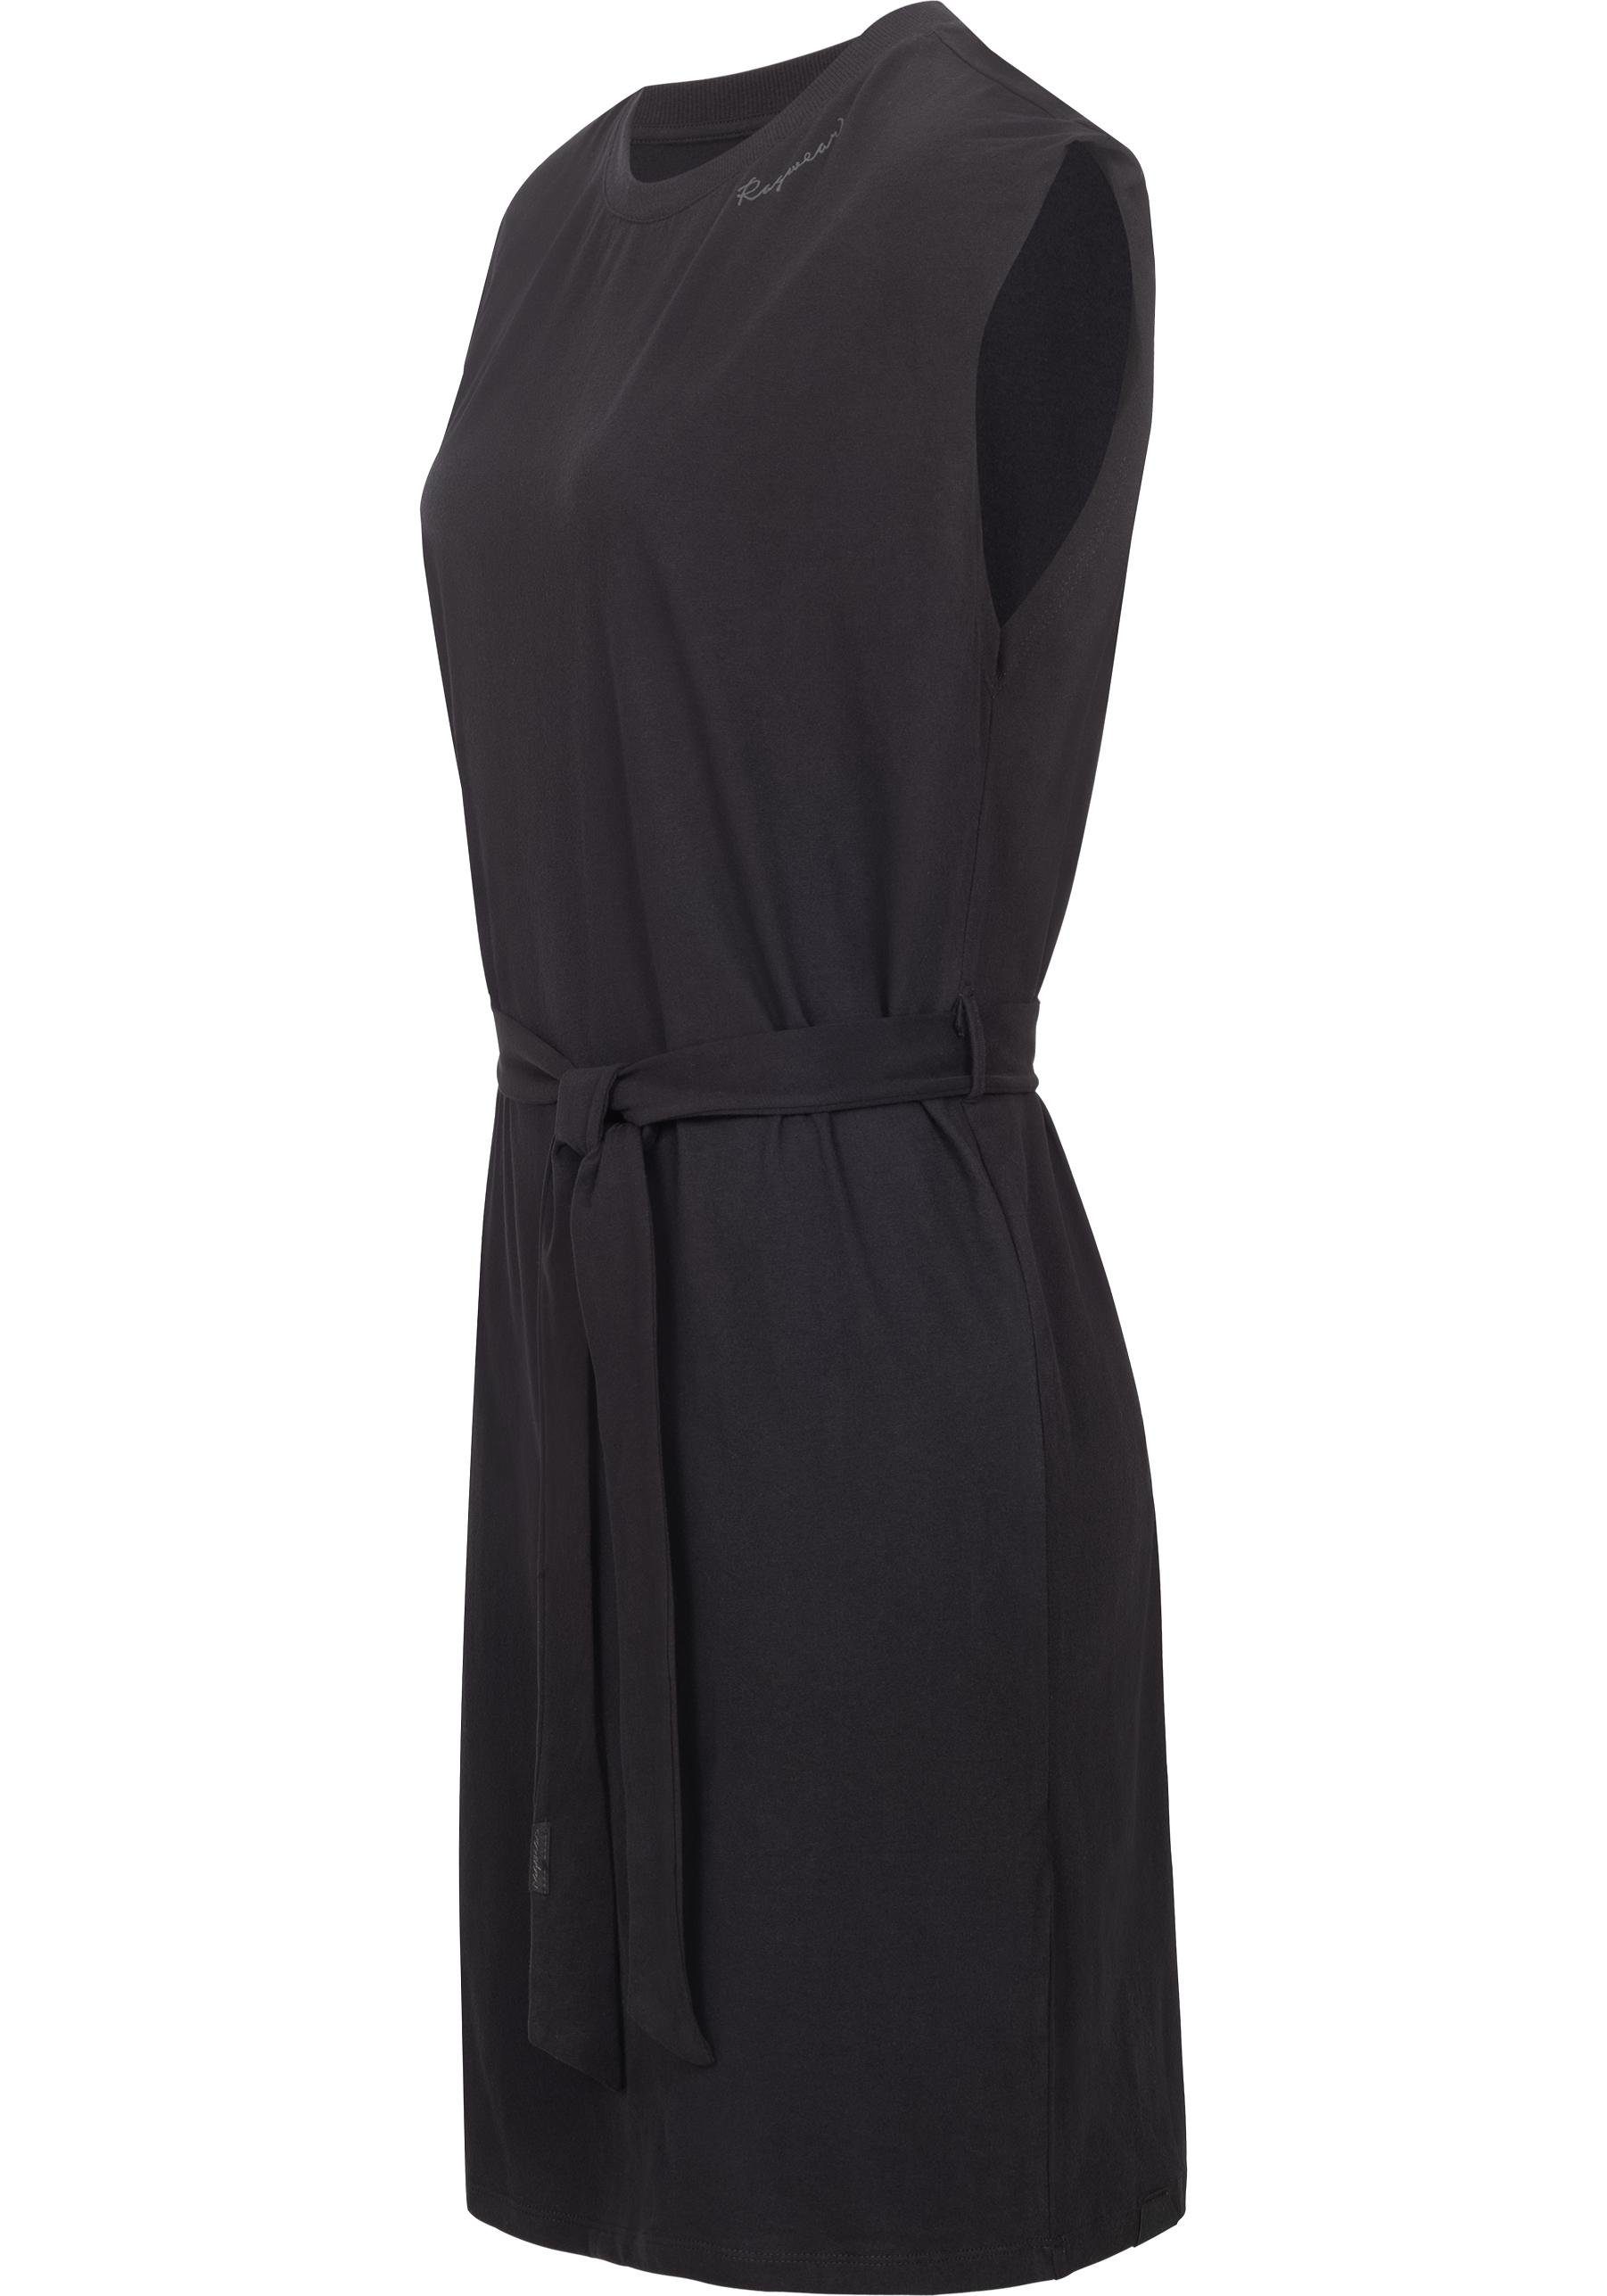 Ragwear Shirtkleid Taille Bindeband schwarz an stylisches mit Delocca der Sommerkleid